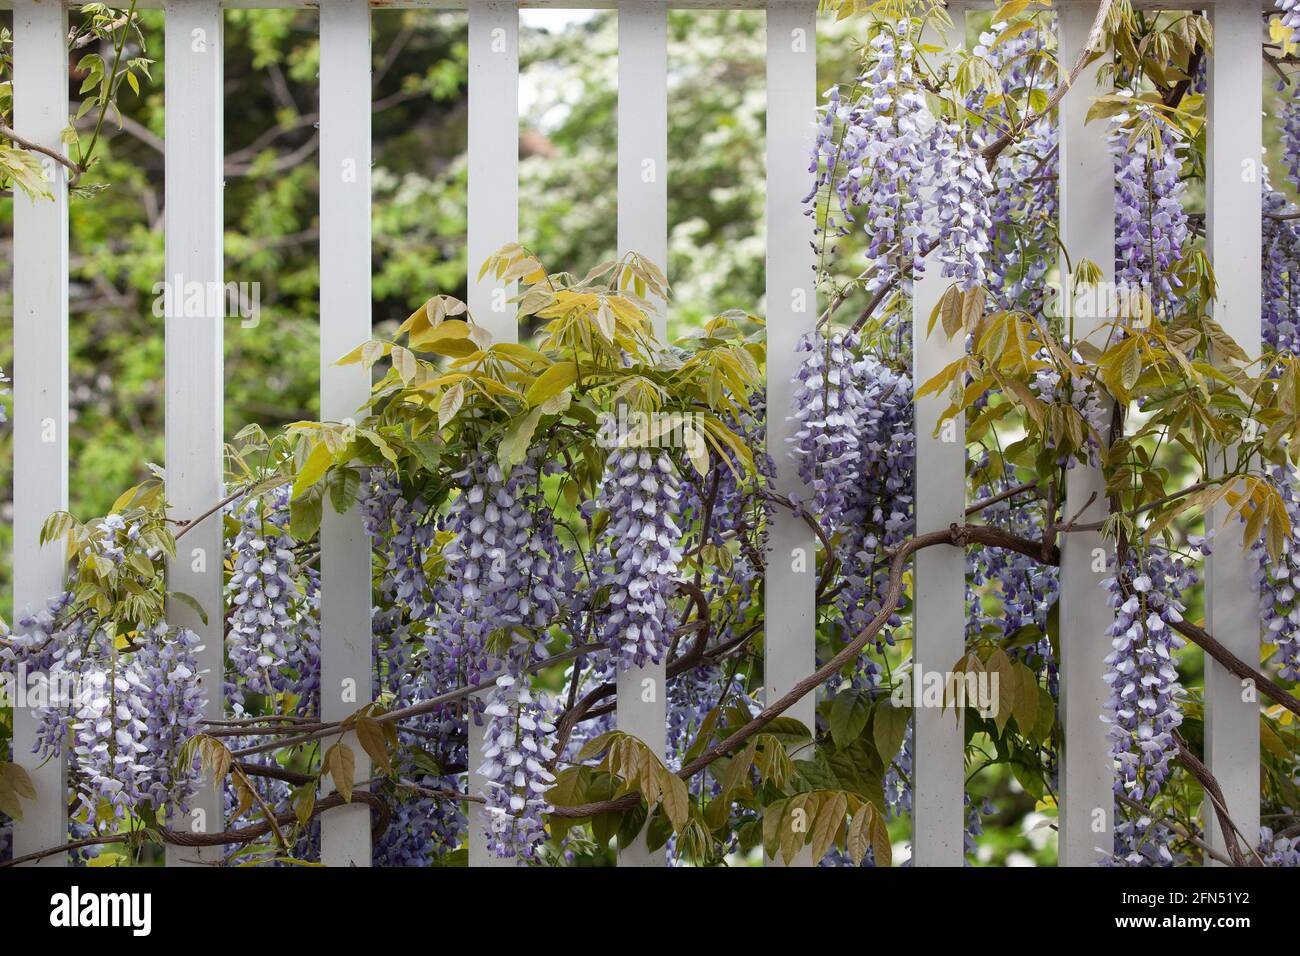 Londra, Regno Unito: In un giardino a Clapham nel mese di maggio, un wisteria sinensis 'prolifico' fiorisce su un balcone di legno bianco, i suoi lunghi racemi svincolati Foto Stock